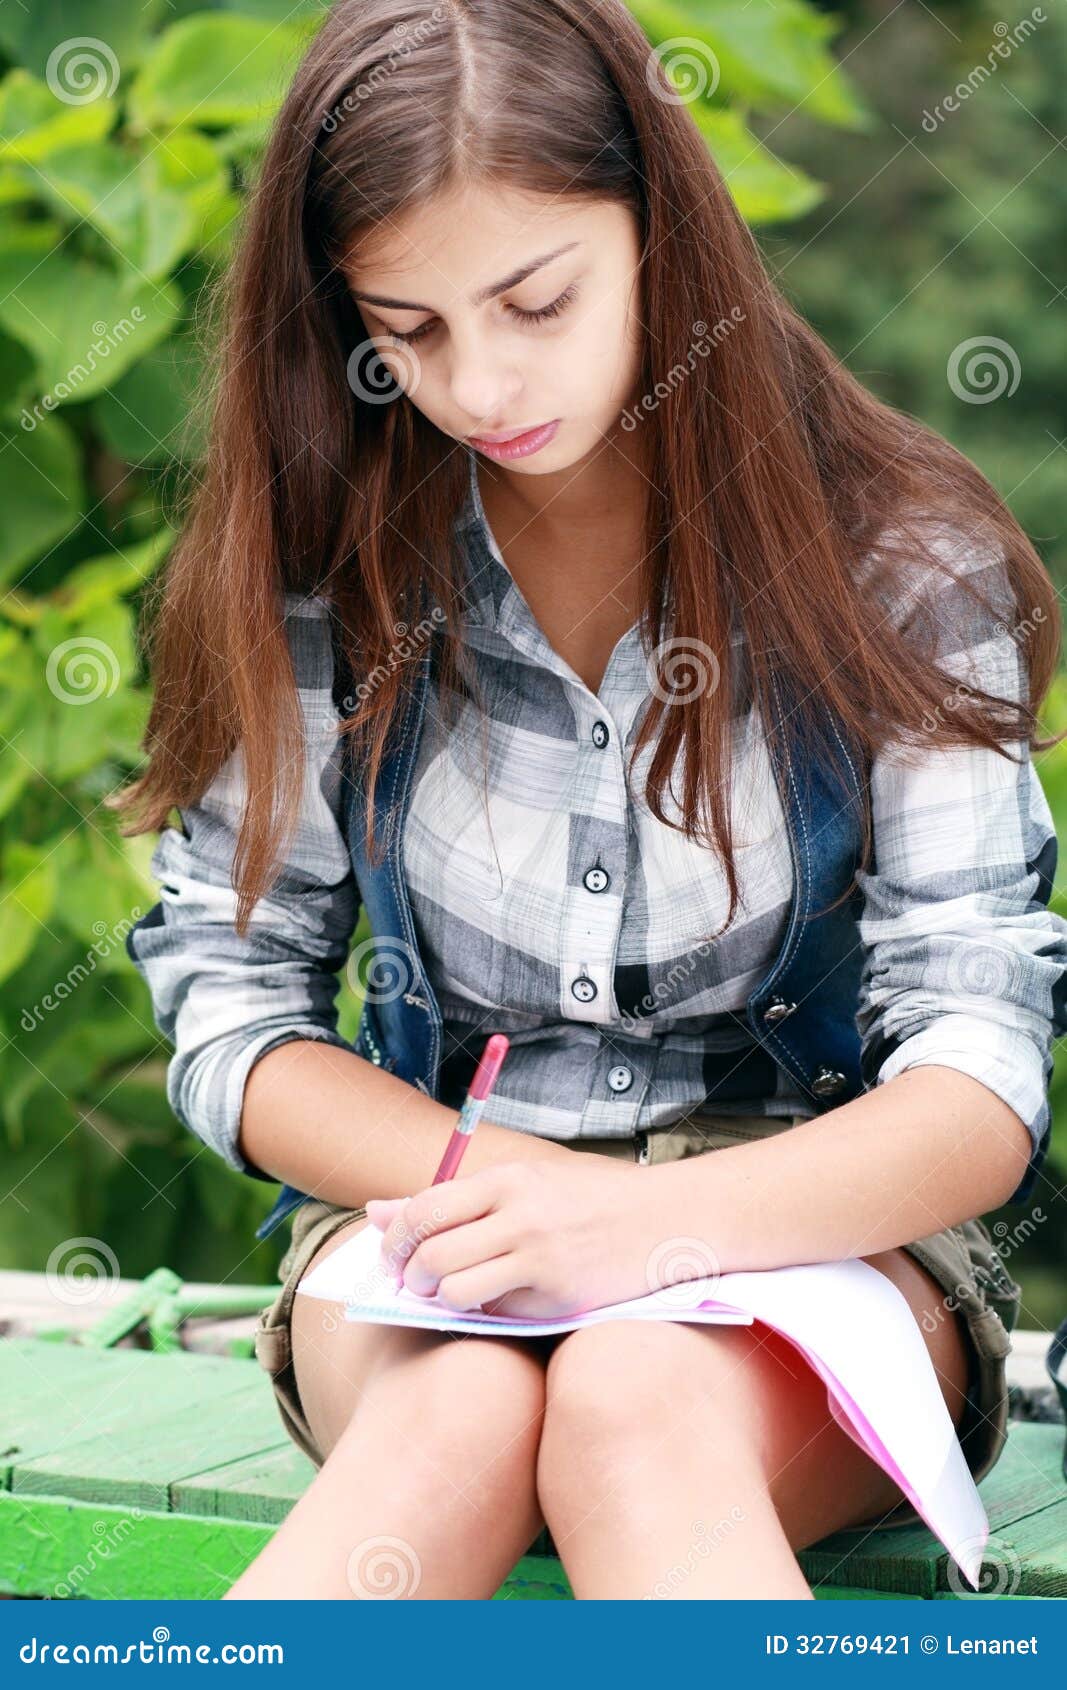 Schoolgirl Outdoor Stock Image - Image: 32769421